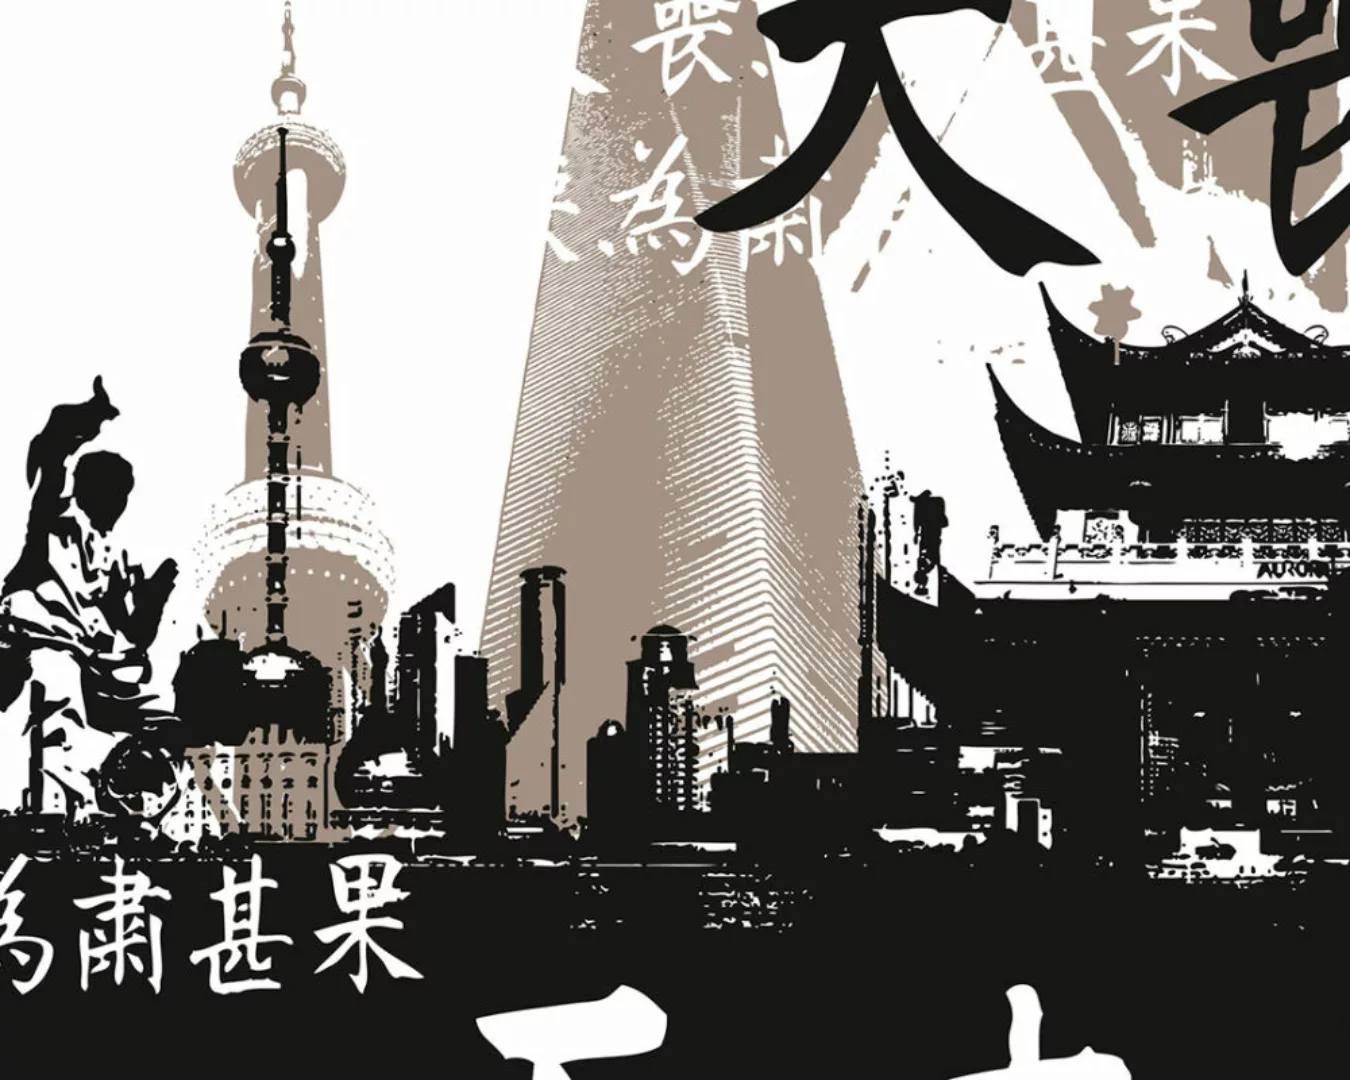 Fototapete "Shanghai" 4,00x2,50 m / Glattvlies Perlmutt günstig online kaufen